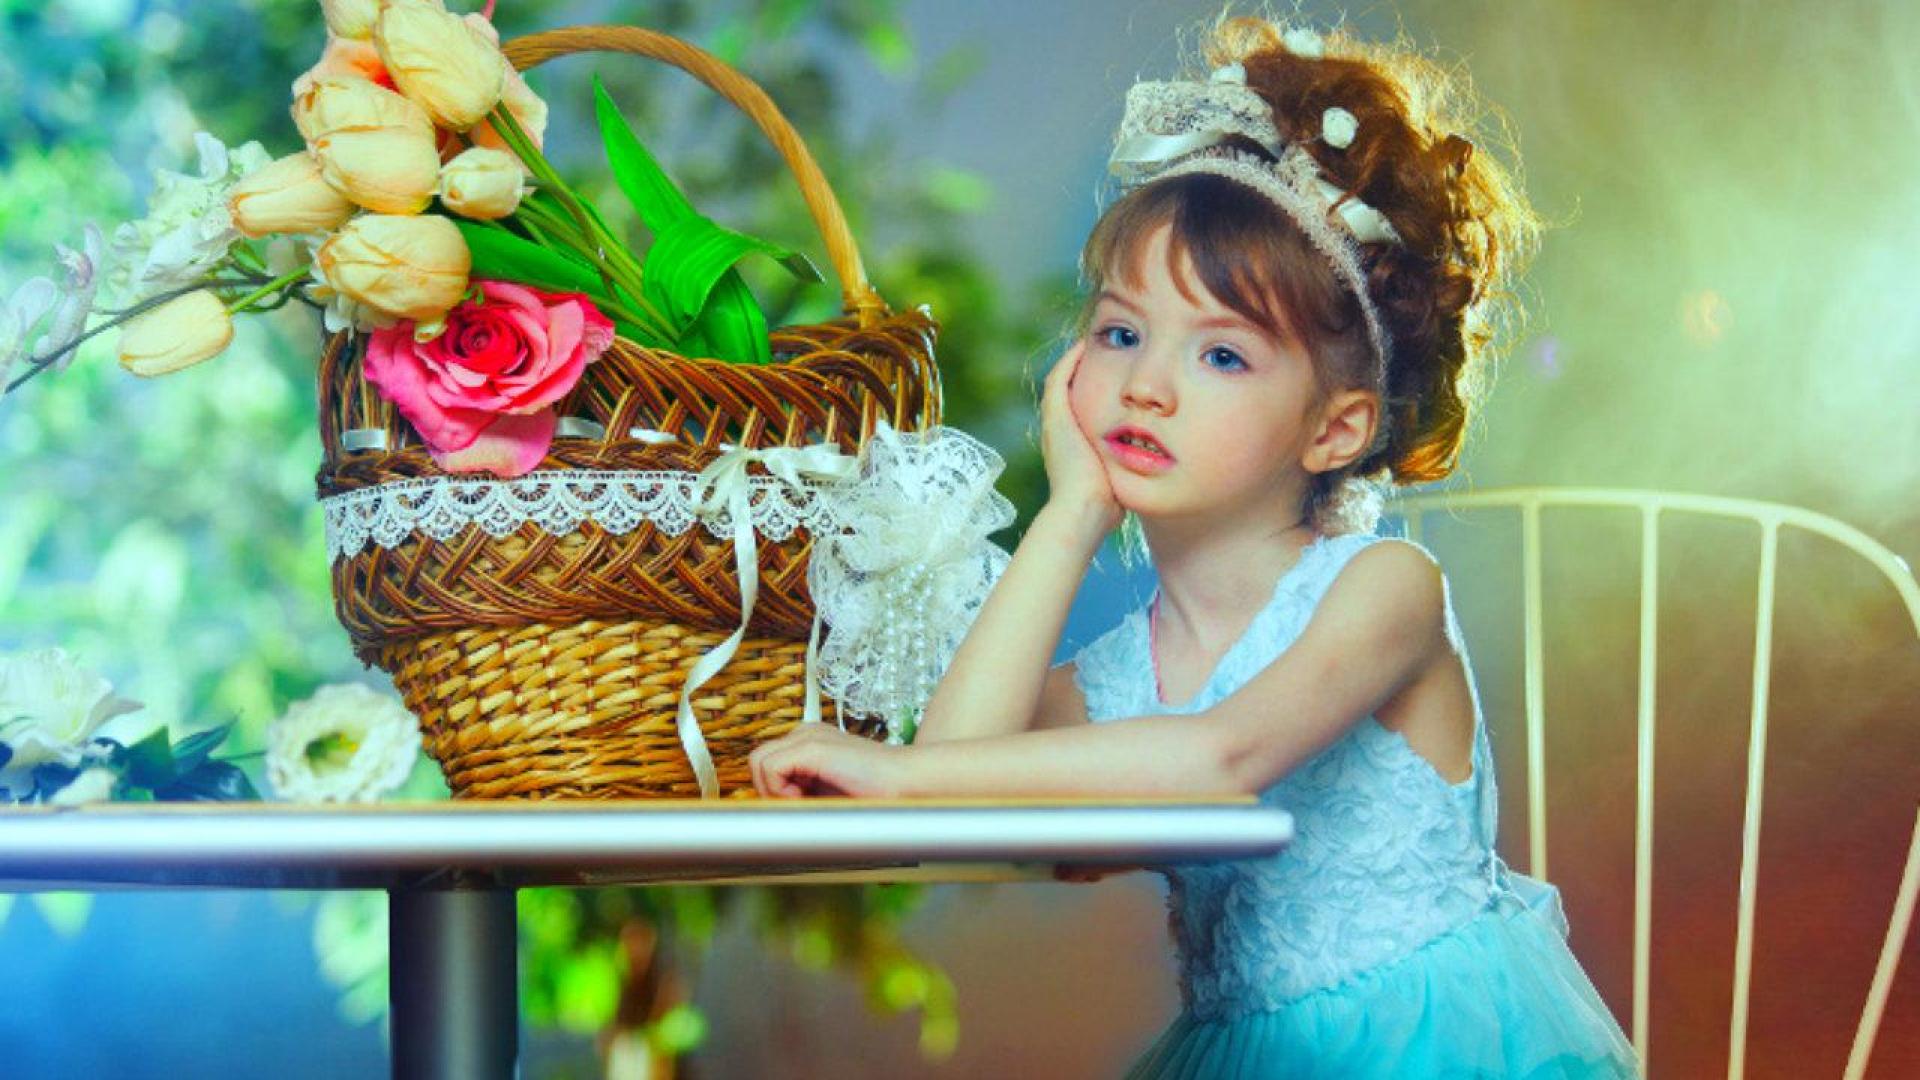 Small Girls Wallpaper - Beautiful Little Girl - 1920x1080 Wallpaper -  